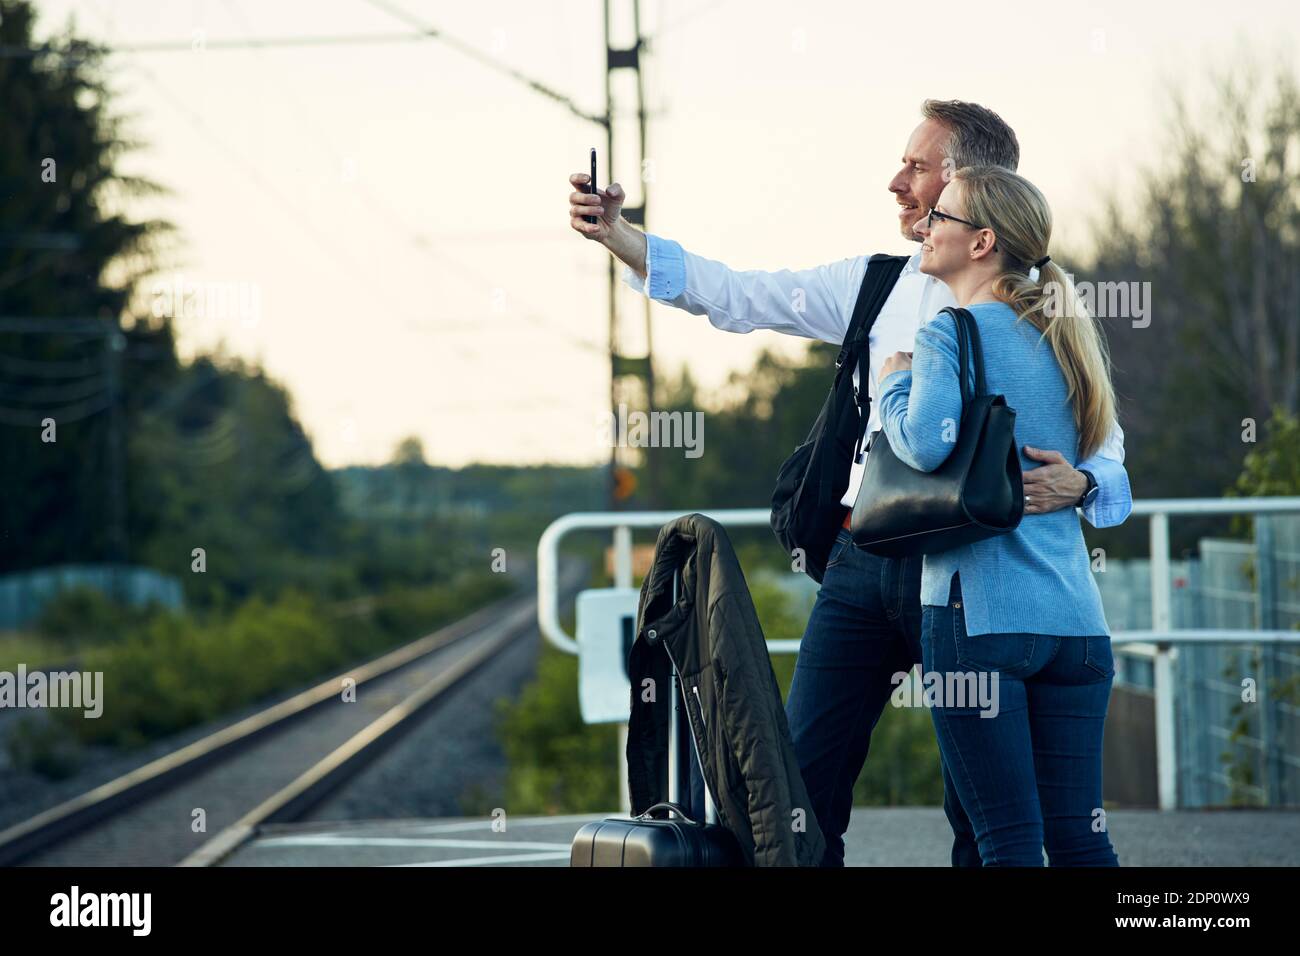 Ein Paar, das Selfie am Bahnhofsplatz gemacht hat Stockfoto